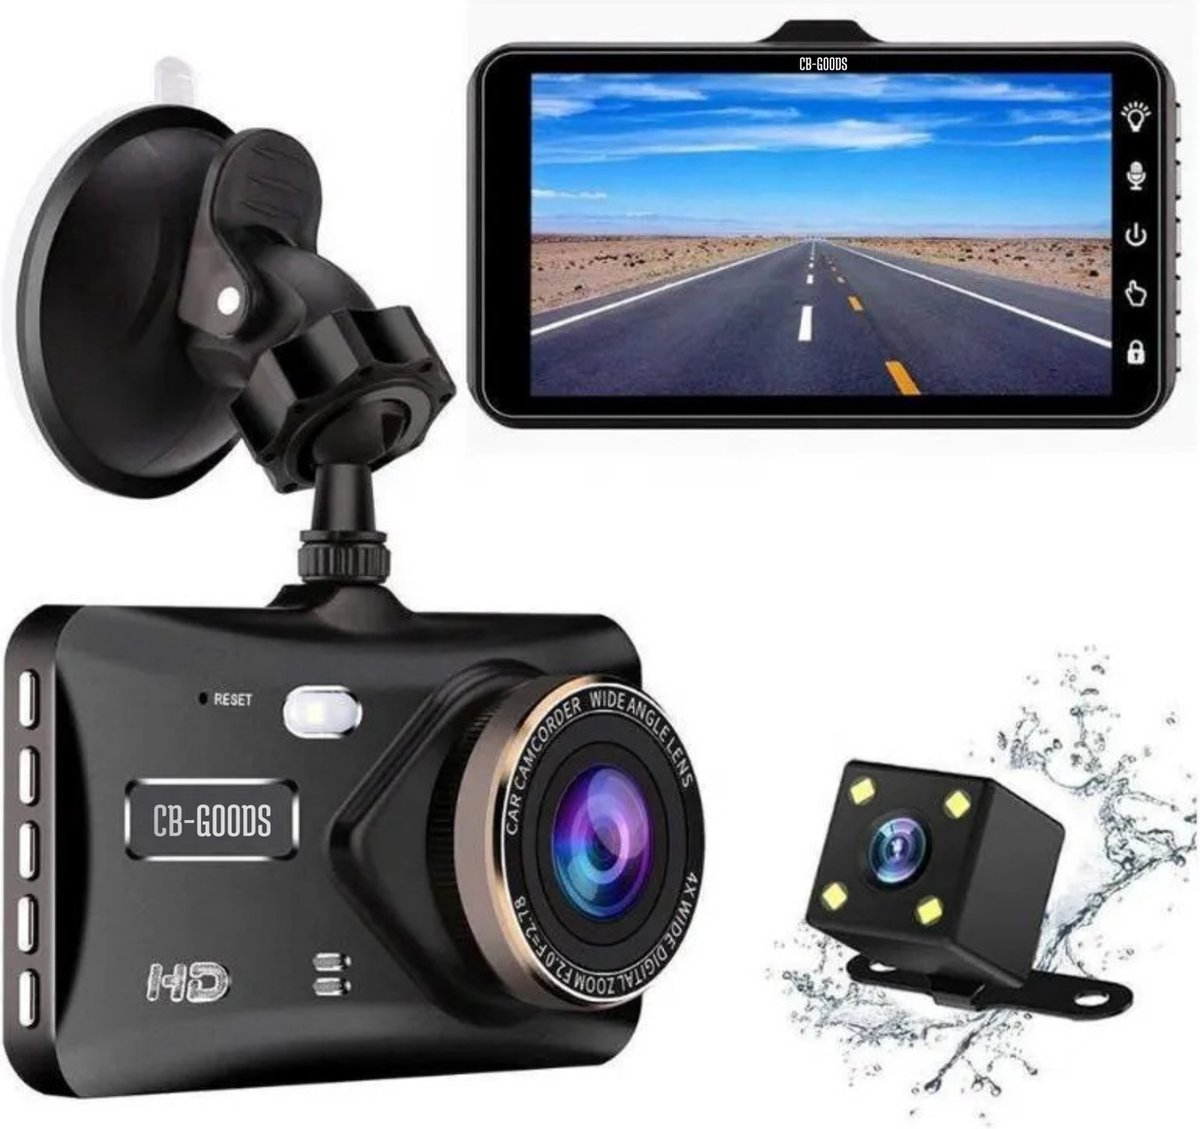 Menzo Dual Dashcam pour voiture - 2023 - Caméra de voiture avant et arrière  - Full HD